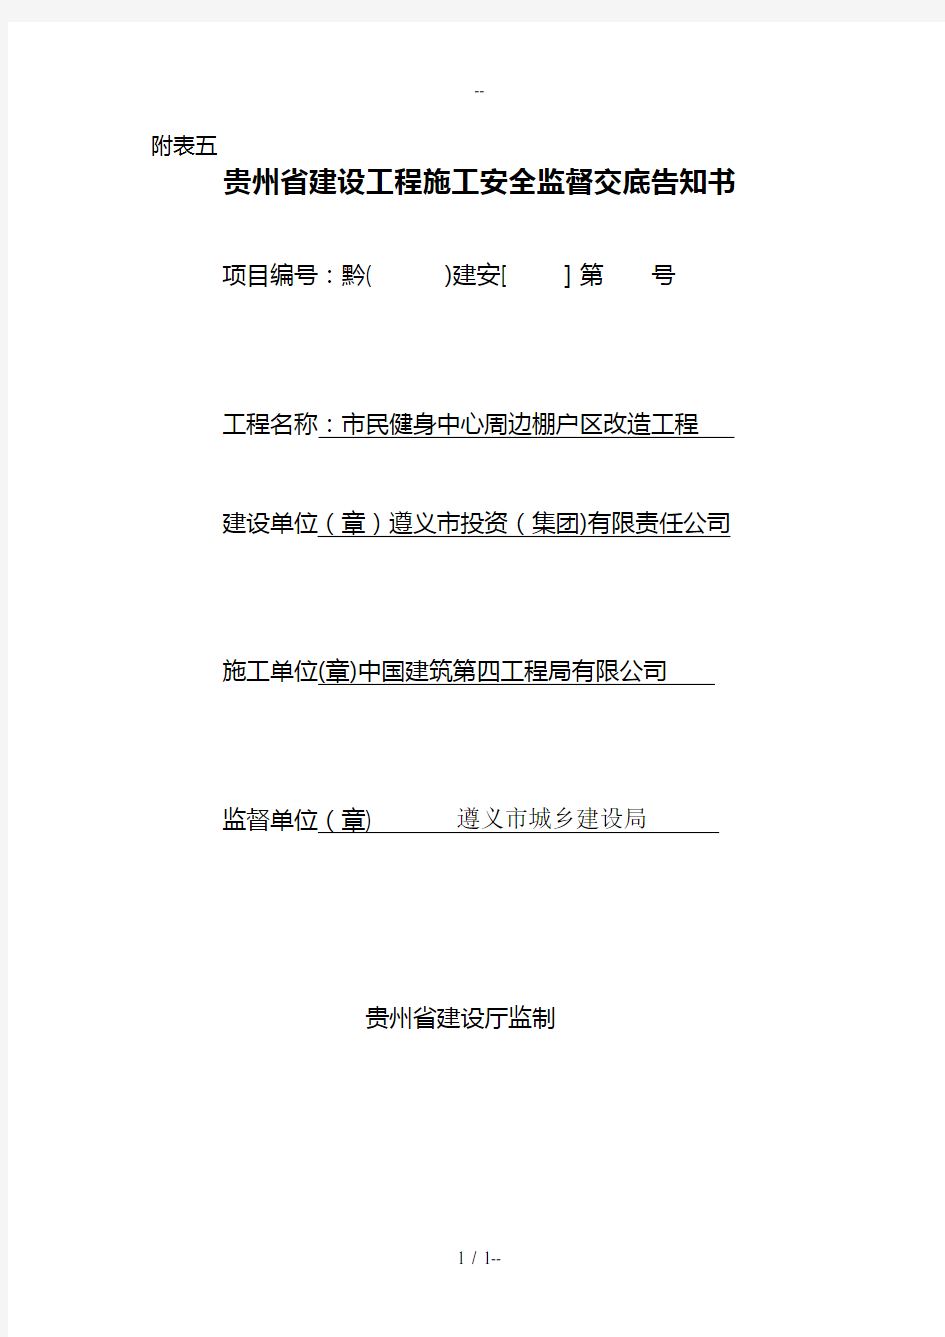 附表五贵州省建设工程施工安全监督交底告知书